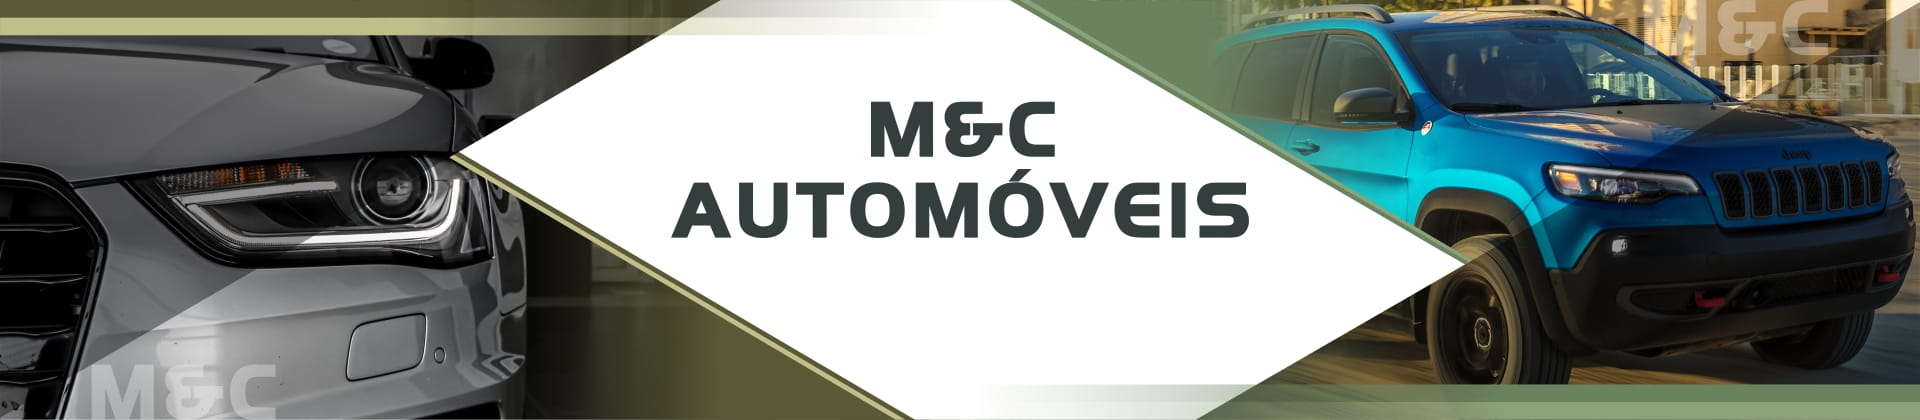 M & C Automóveis